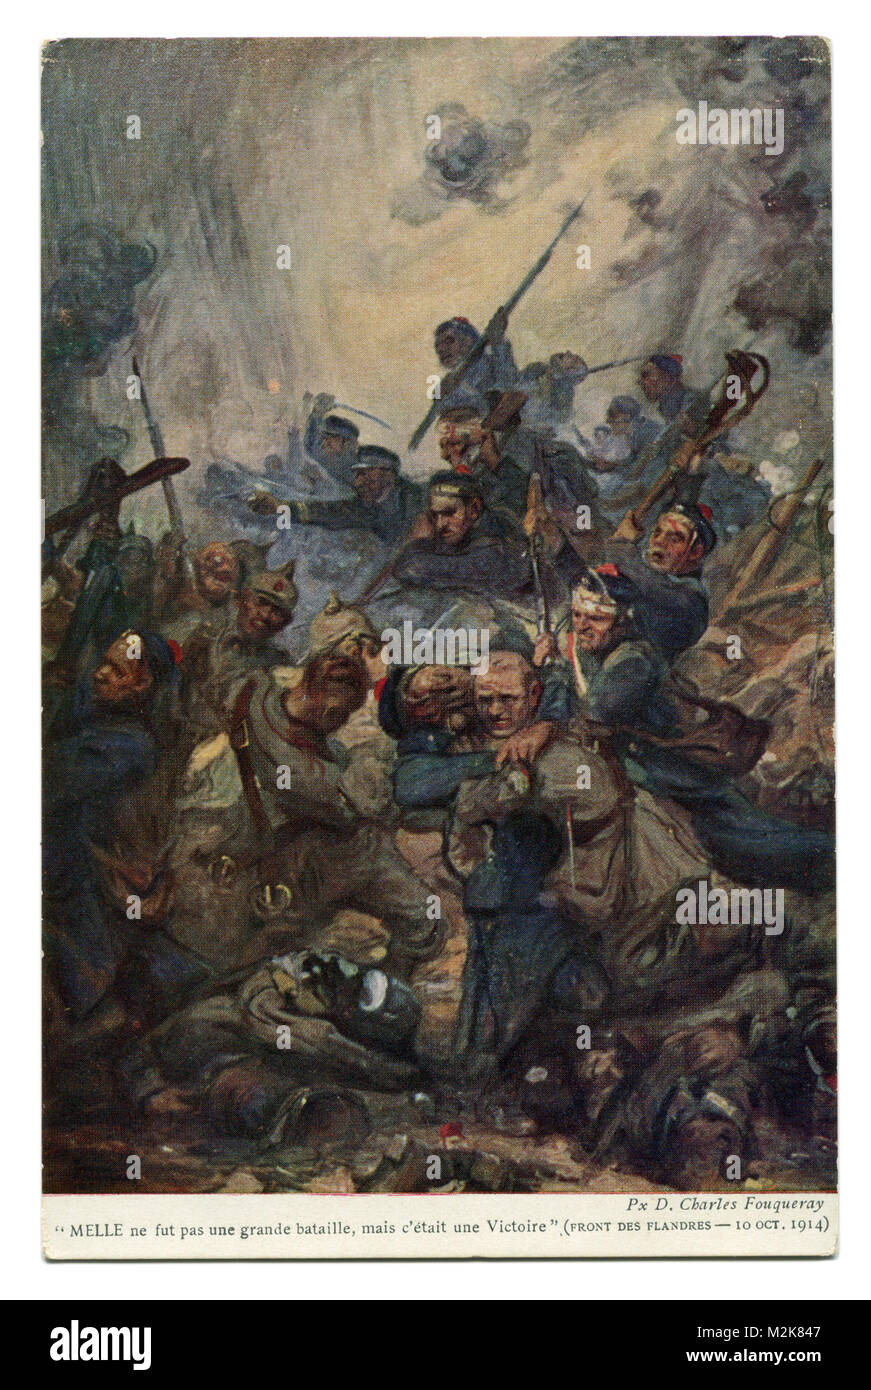 Vecchia cartolina francese: la battaglia per le Fiandre, il belga Marines contro i soldati tedeschi, fronte occidentale, 10 ottobre 1914. La prima guerra mondiale Foto Stock